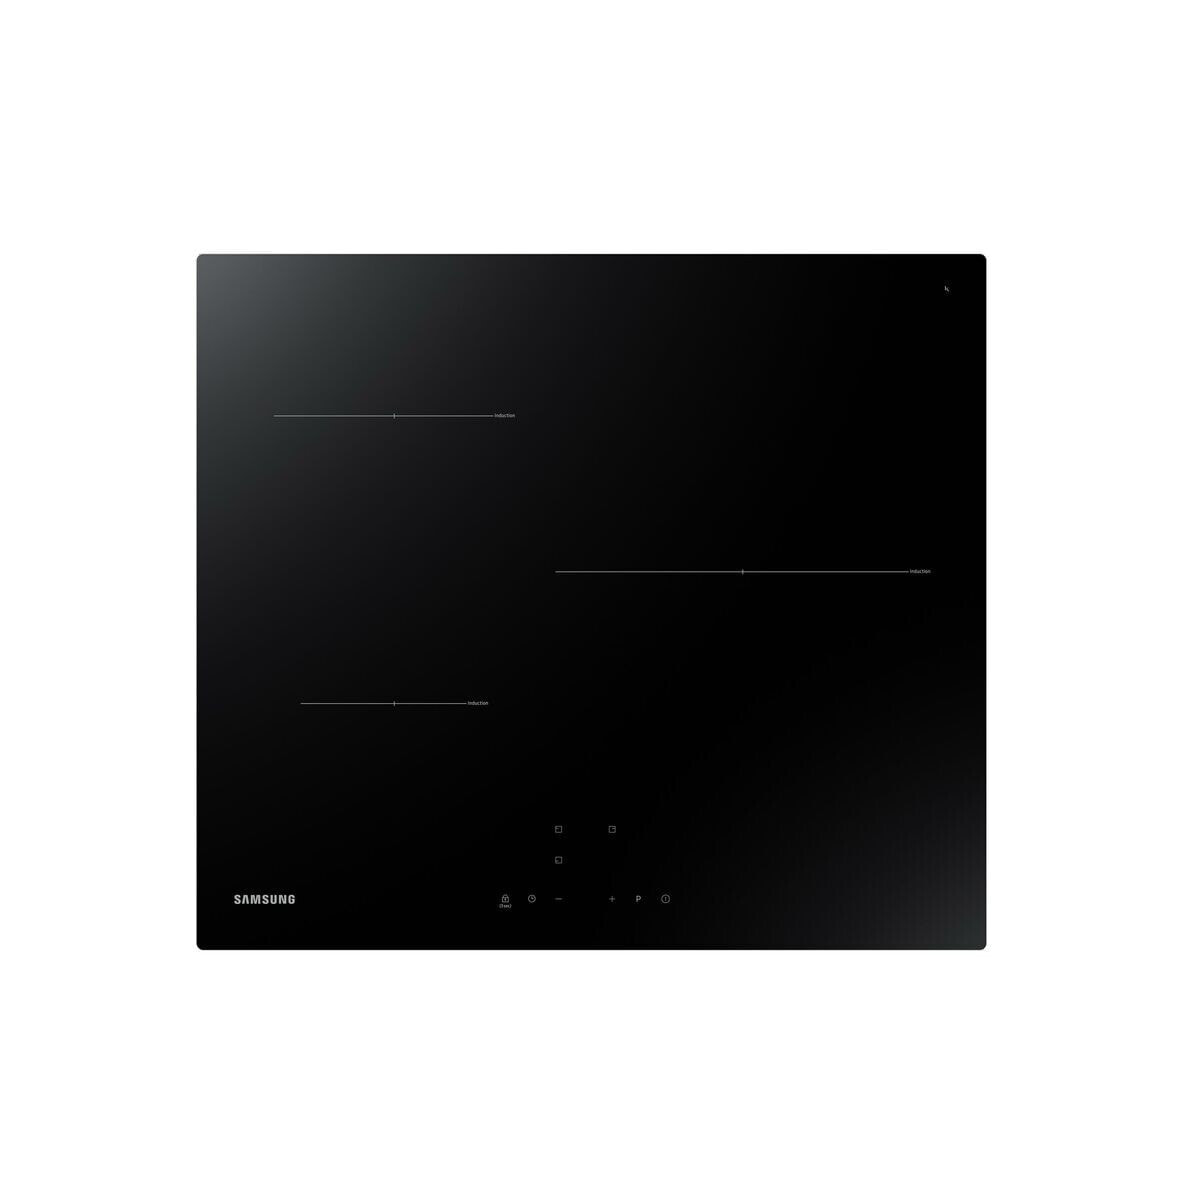 Samsung NZ63T3706A1 варочная поверхность Черный Встроенный 60 cm Плита с зонами индукции 3 зона(ы)